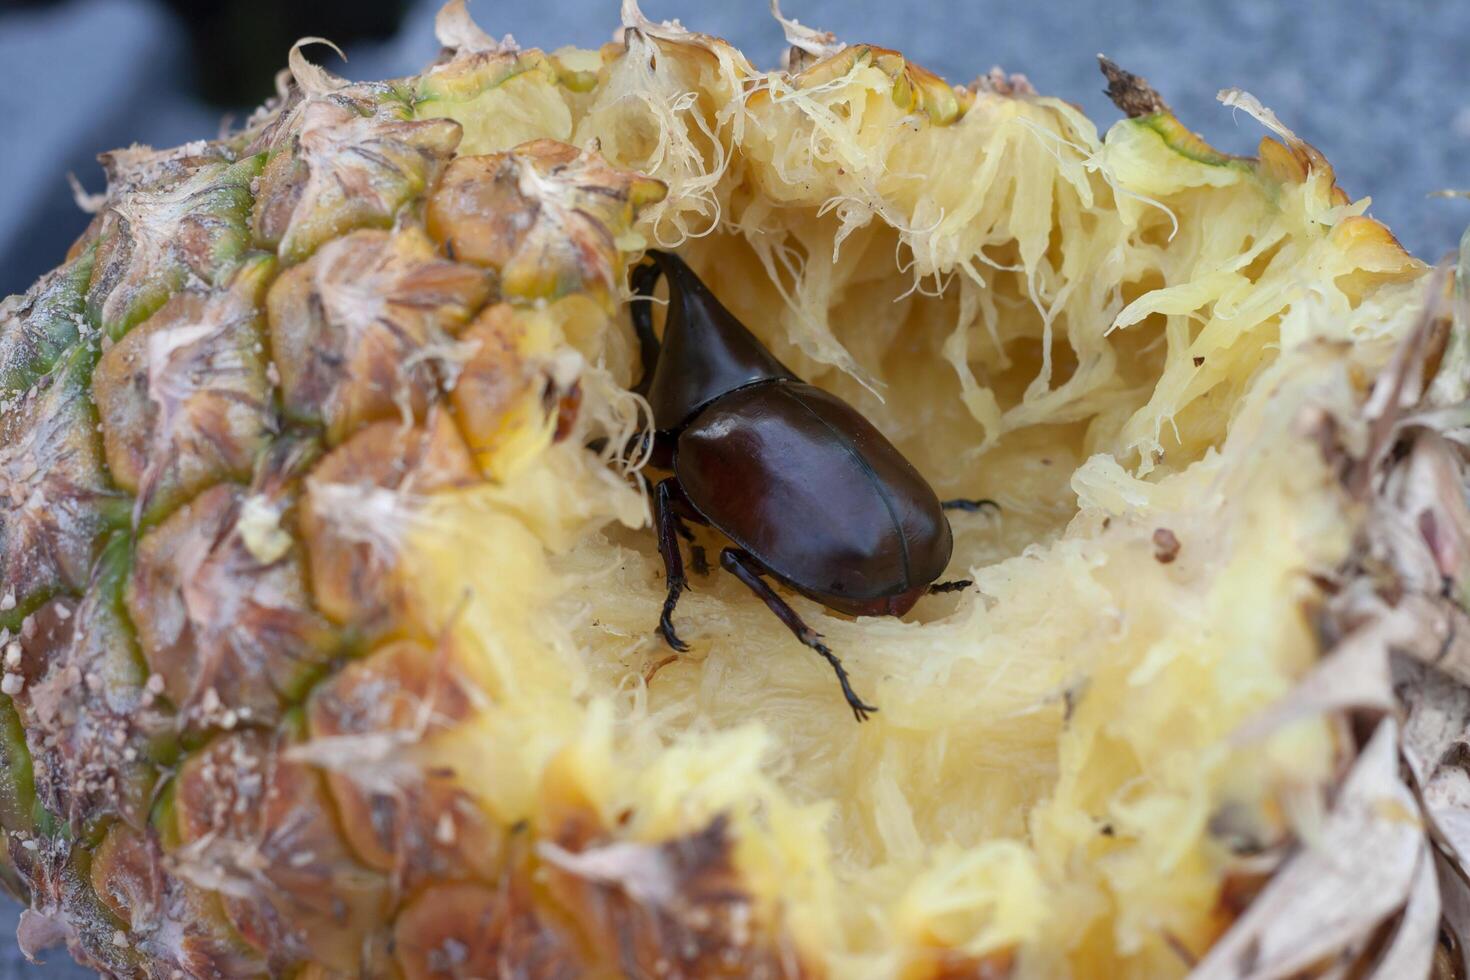 dynastinae ou veado besouro estão comendo abacaxi gourmet. foto